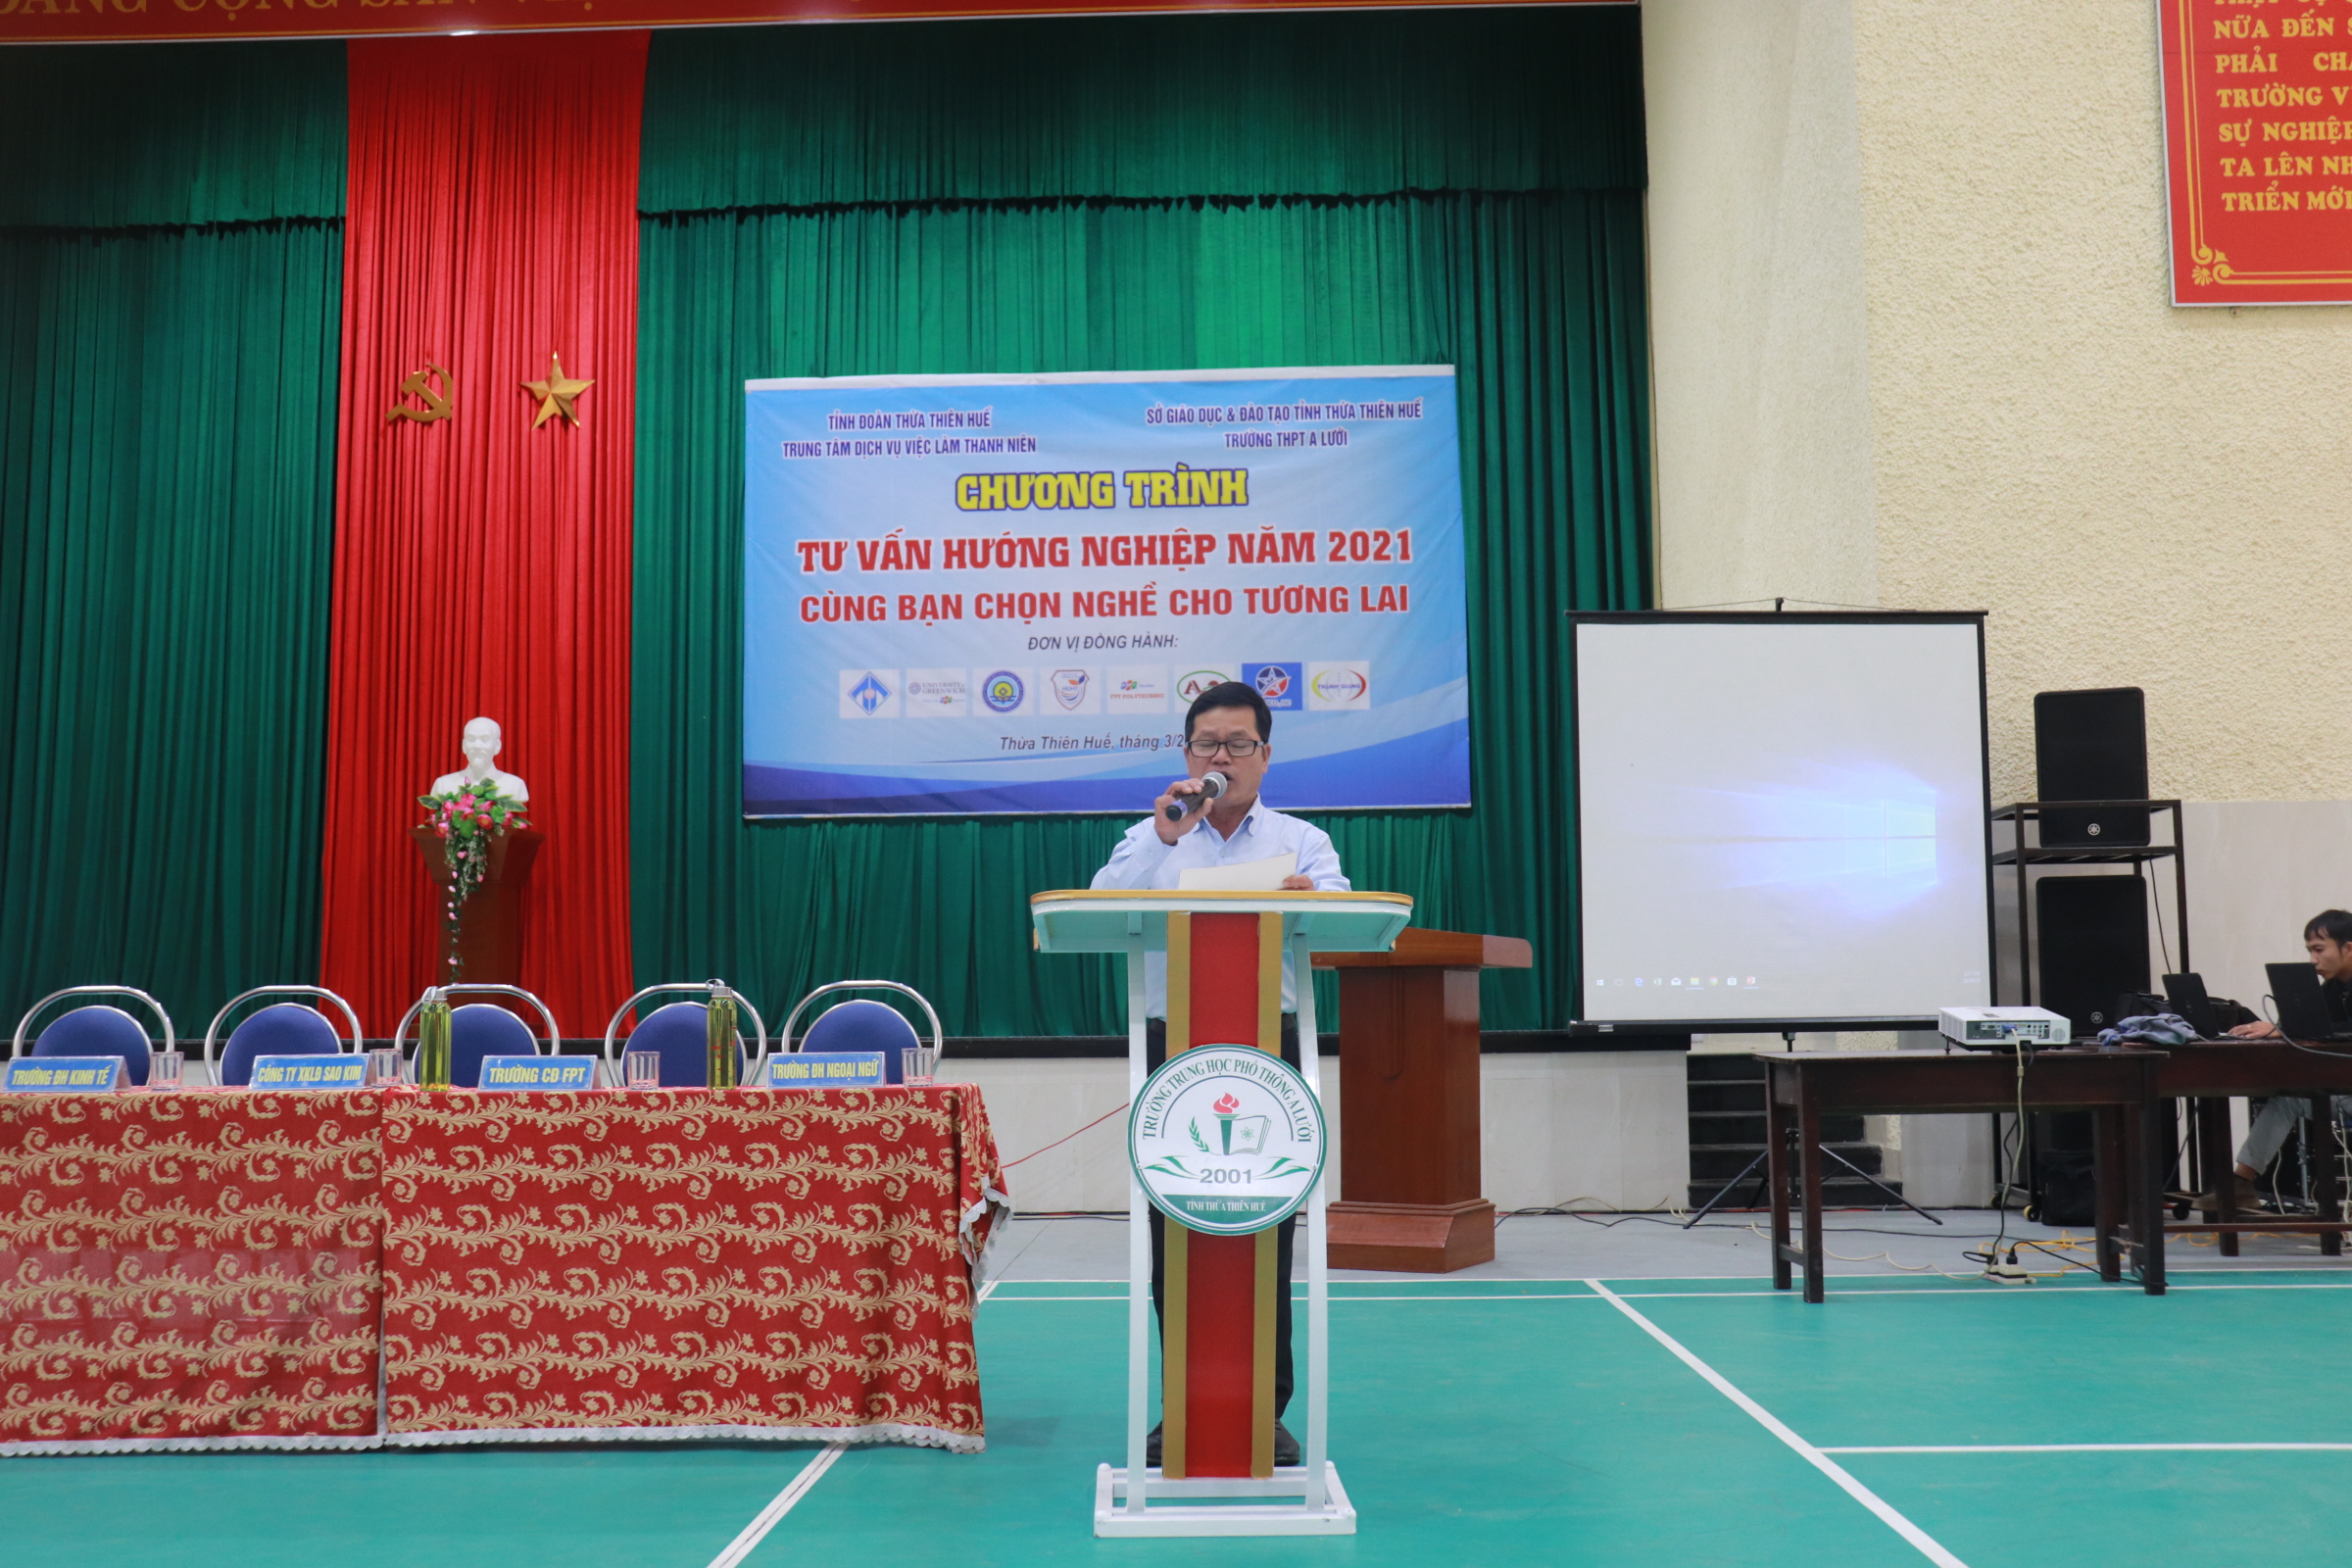 Đ/c Trần Xuân Tiến - Phó Giám đốc Trung tâm phát biểu tại chương trình